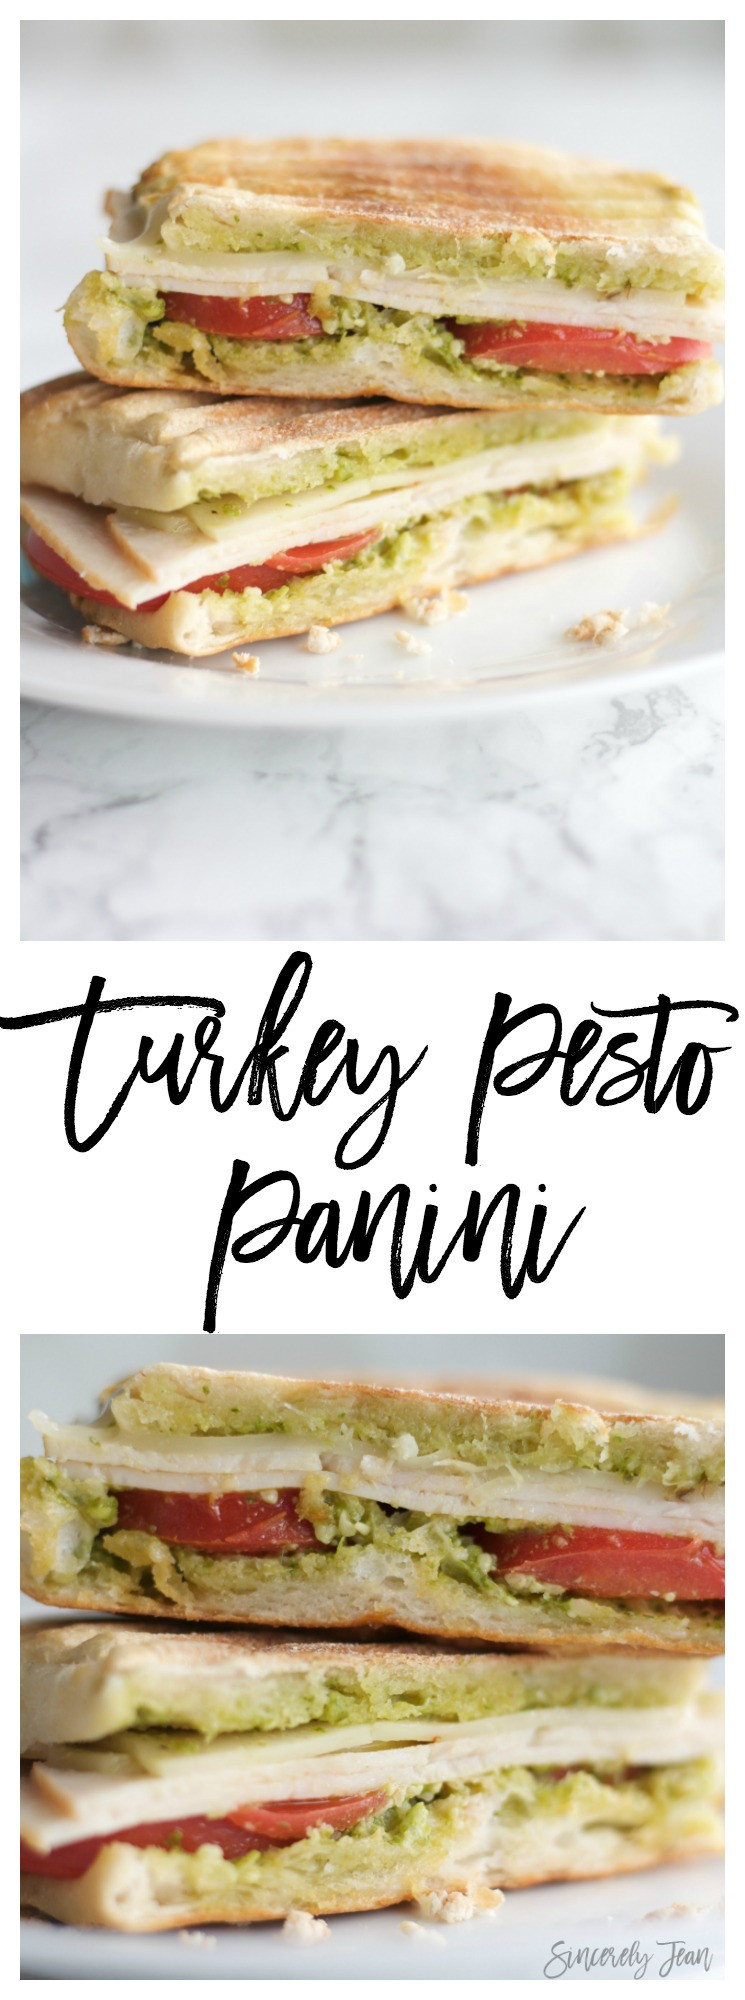 Simple Panini Recipes
 Turkey Pesto Panini Sincerely Jean